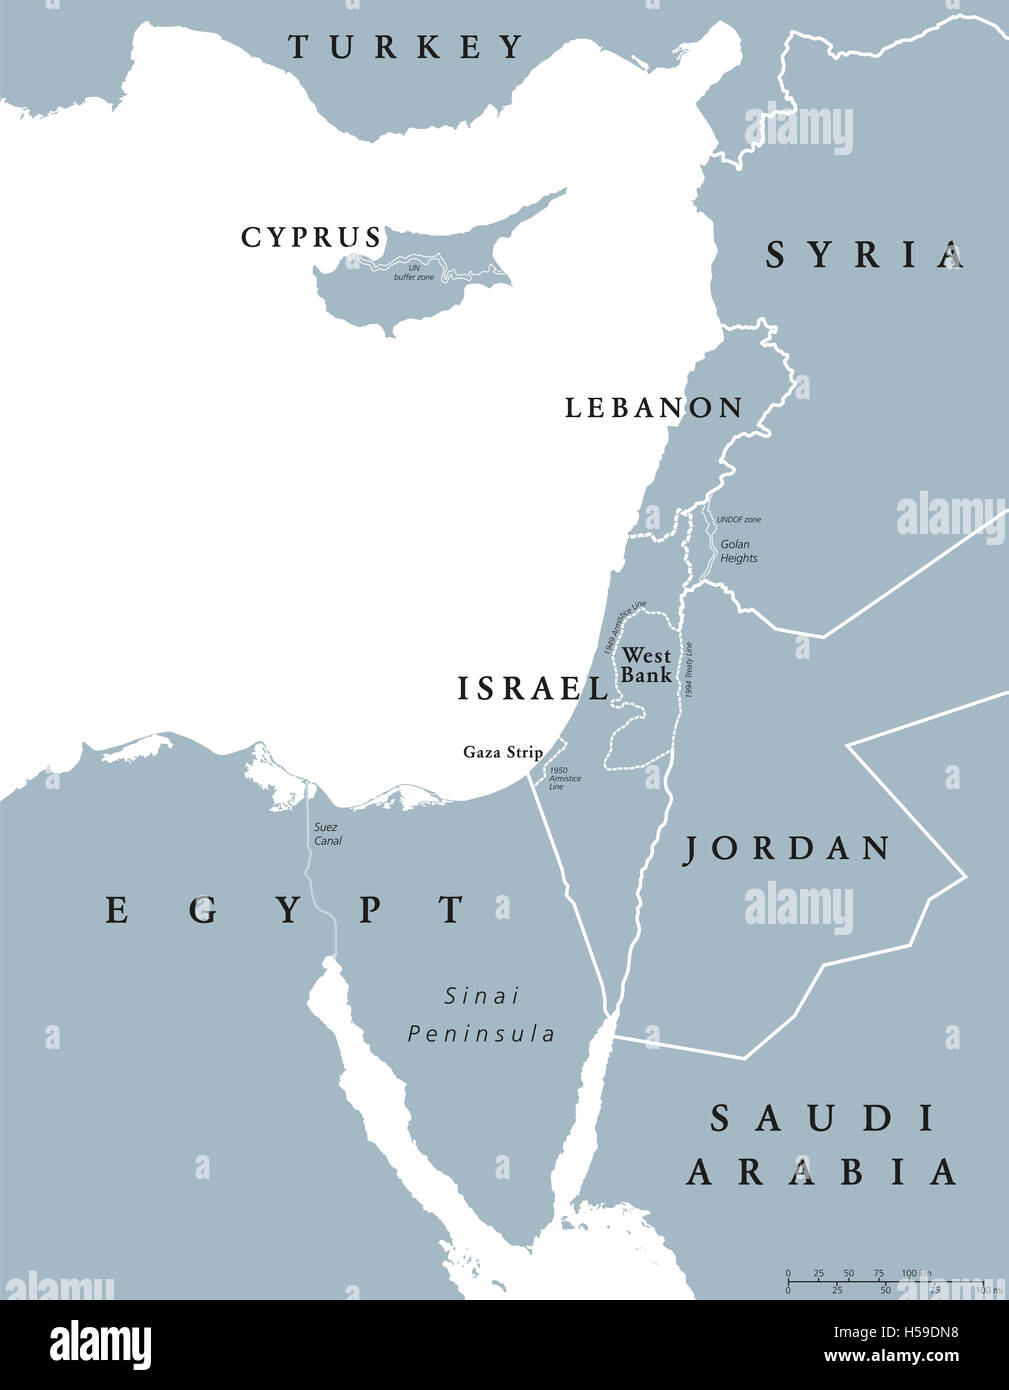 Carte politique de l'Est de la Méditerranée avec les frontières nationales. Nations Unies à l'est de la Méditerranée, levant aussi. Banque D'Images